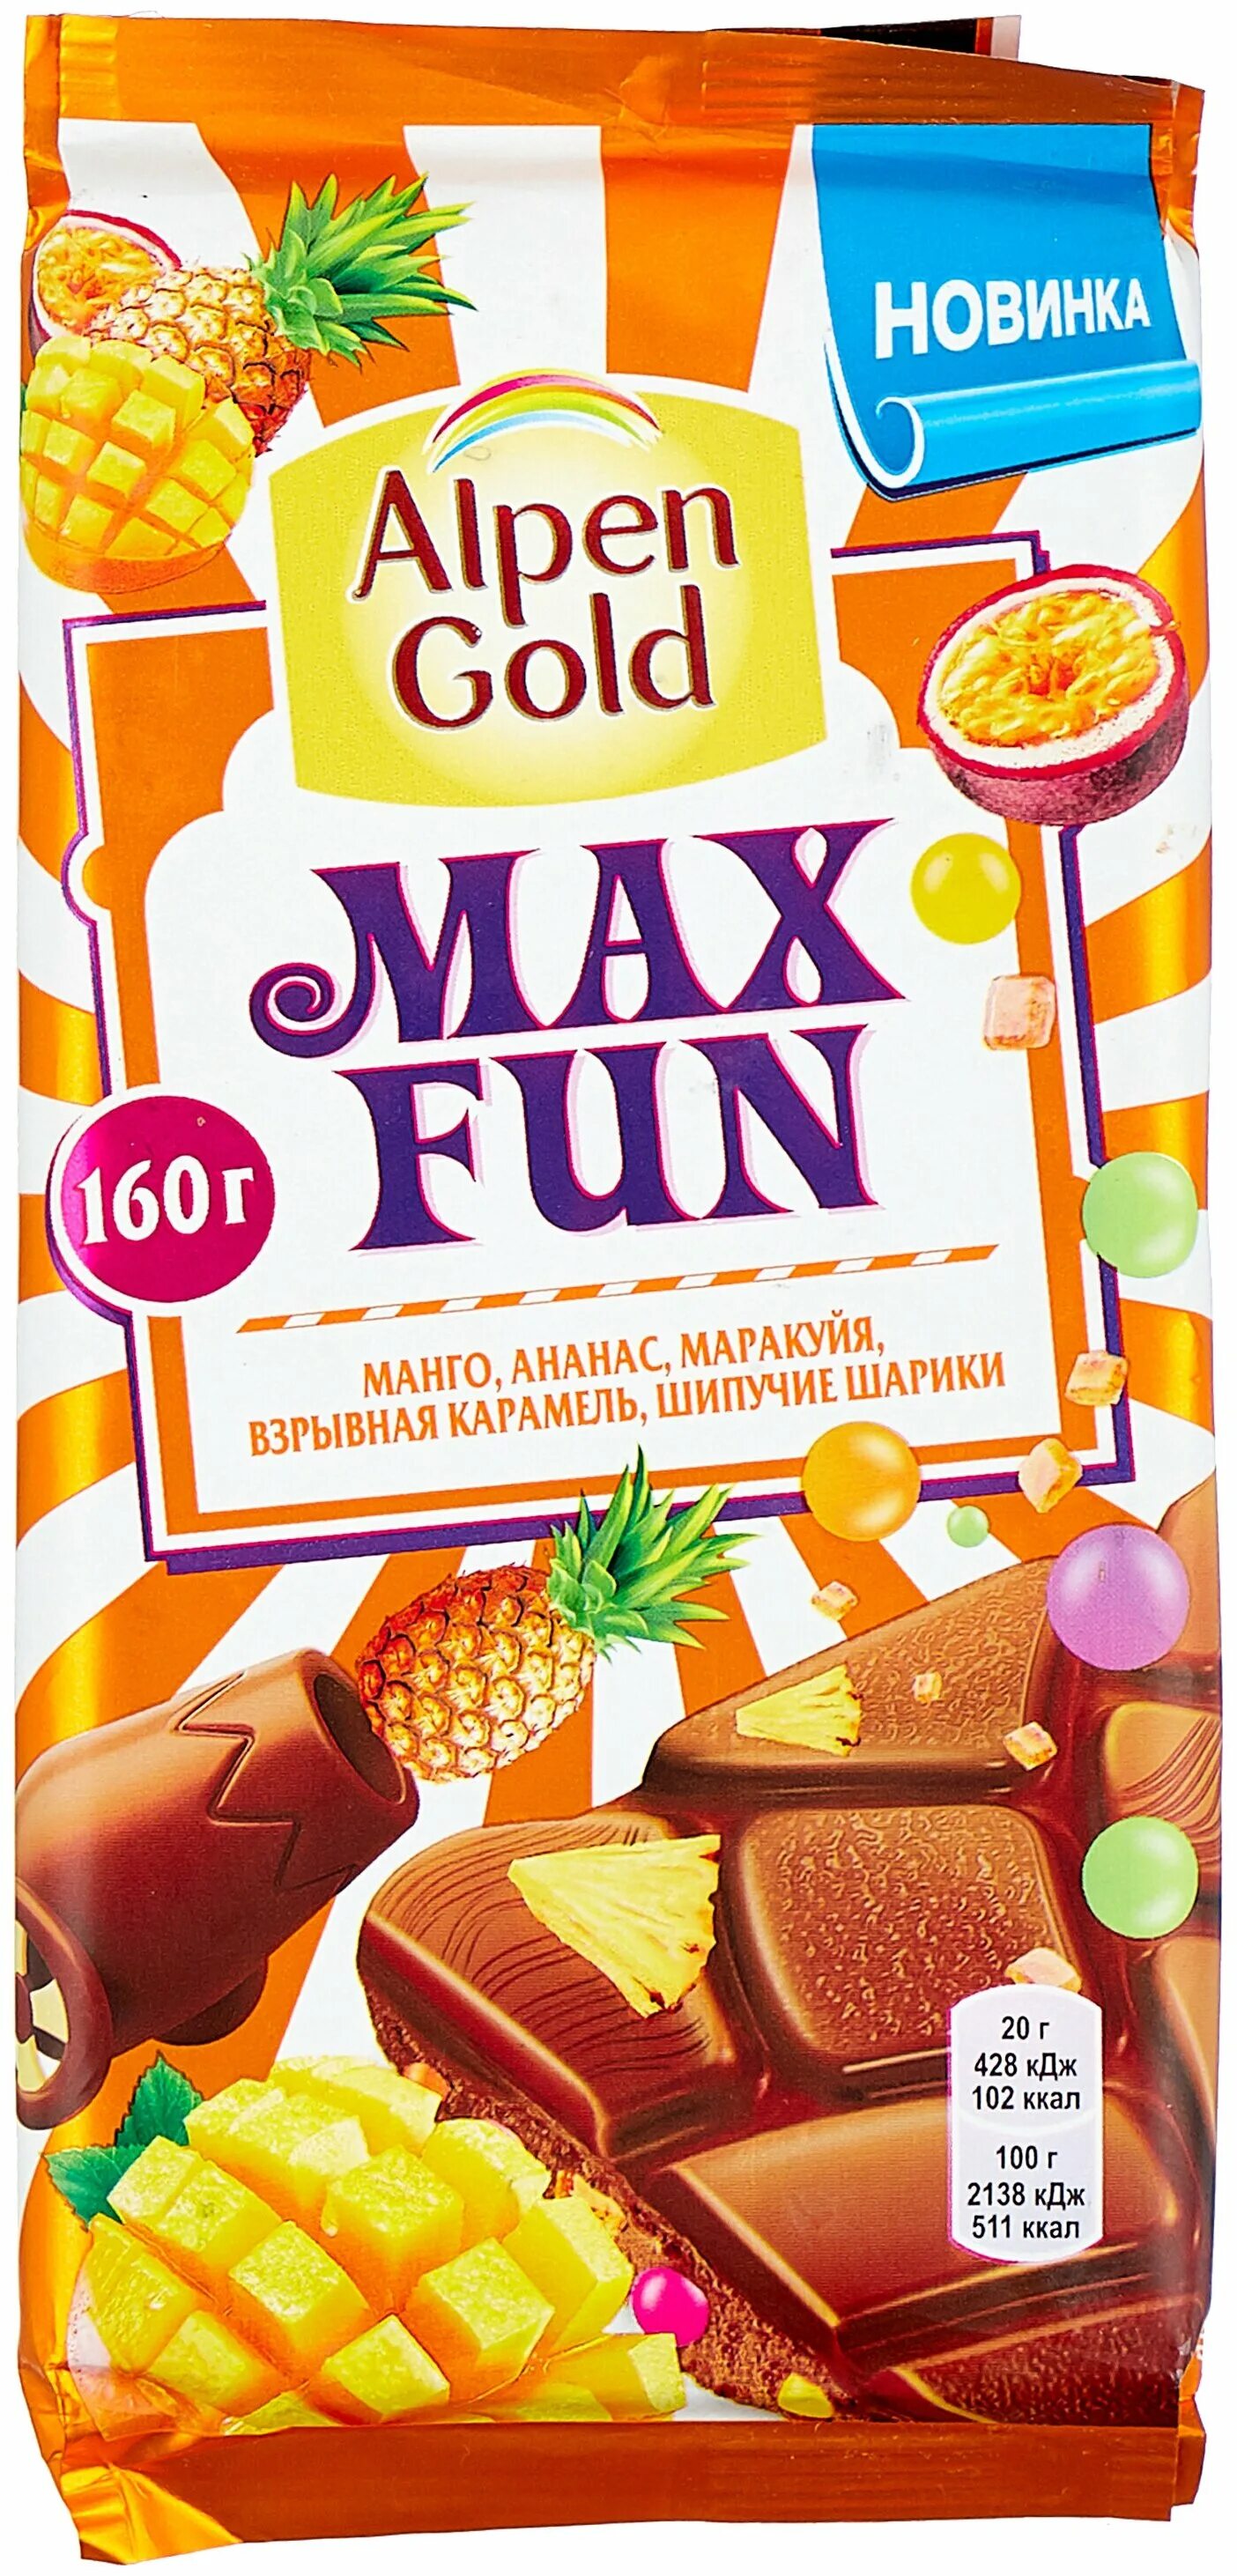 Fun mix. Шоколад Альпен Голд МАКСФАН взрывная карамель 150г. Alpen Gold Max fun манго ананас маракуйя. Шоколад Alpen Gold Max fun. Шоколад Альпен Гольд взрывная карамель.